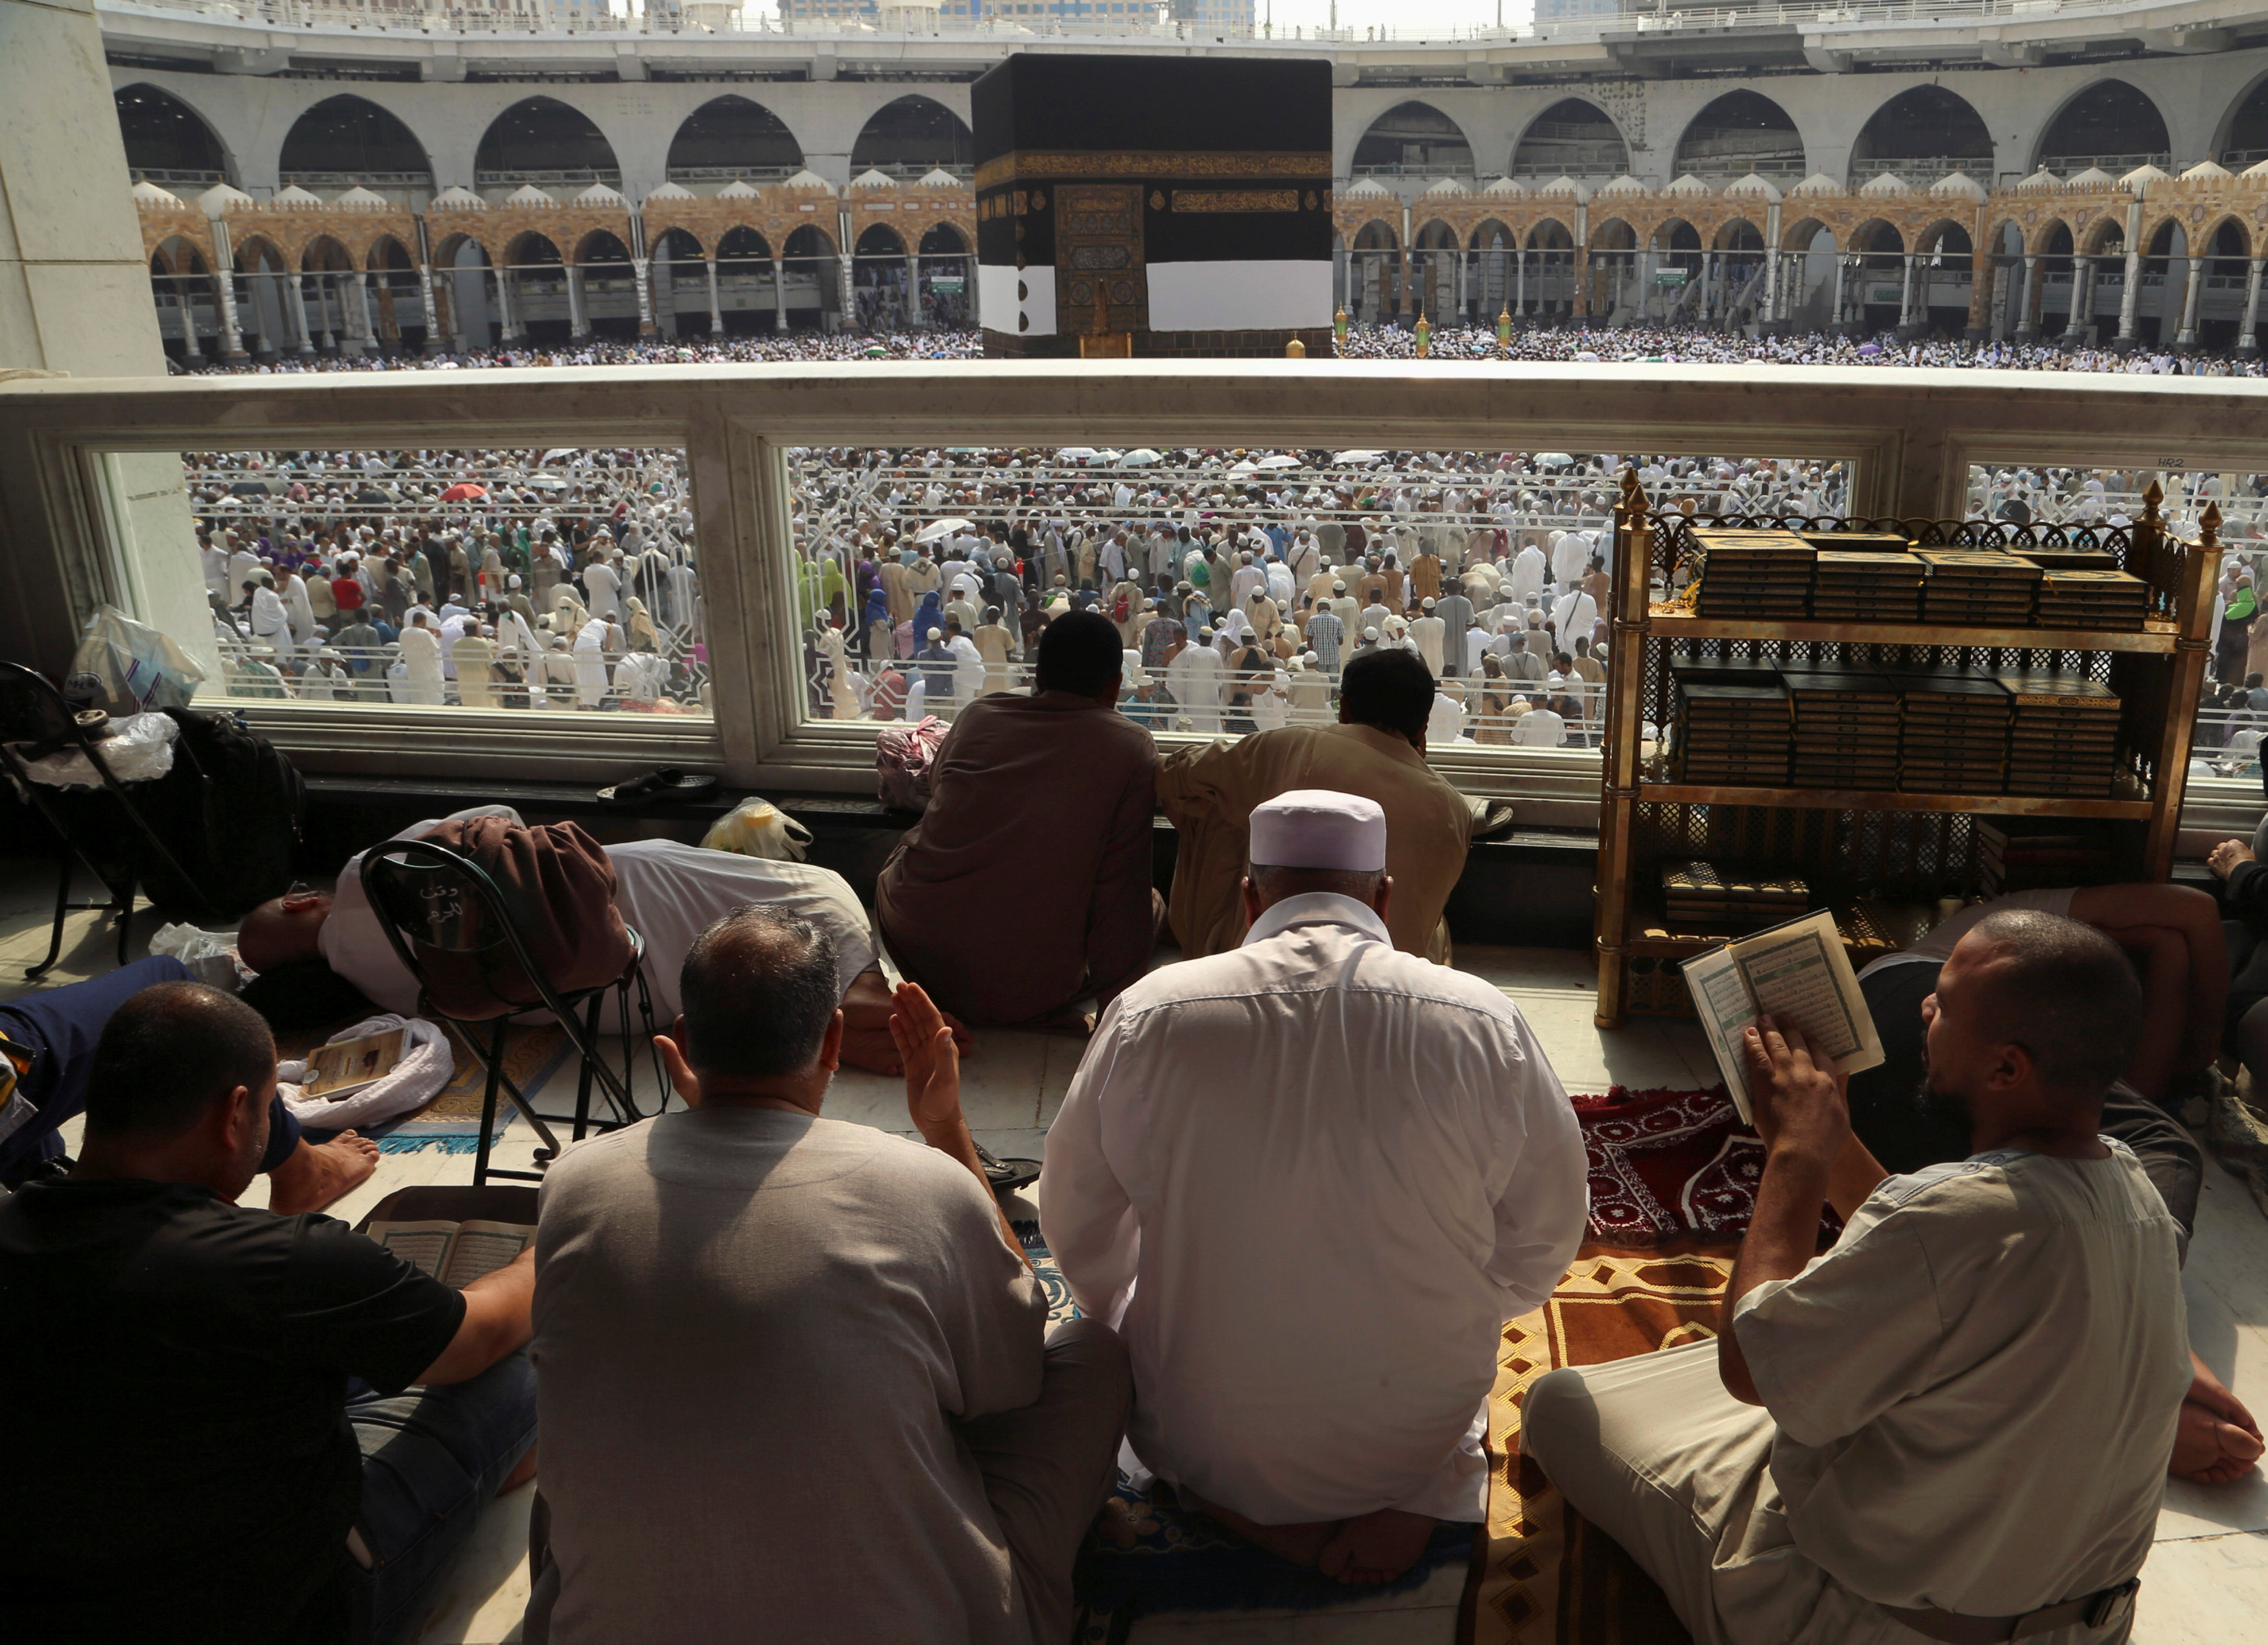 Haj pilgrims start praying in Arafat